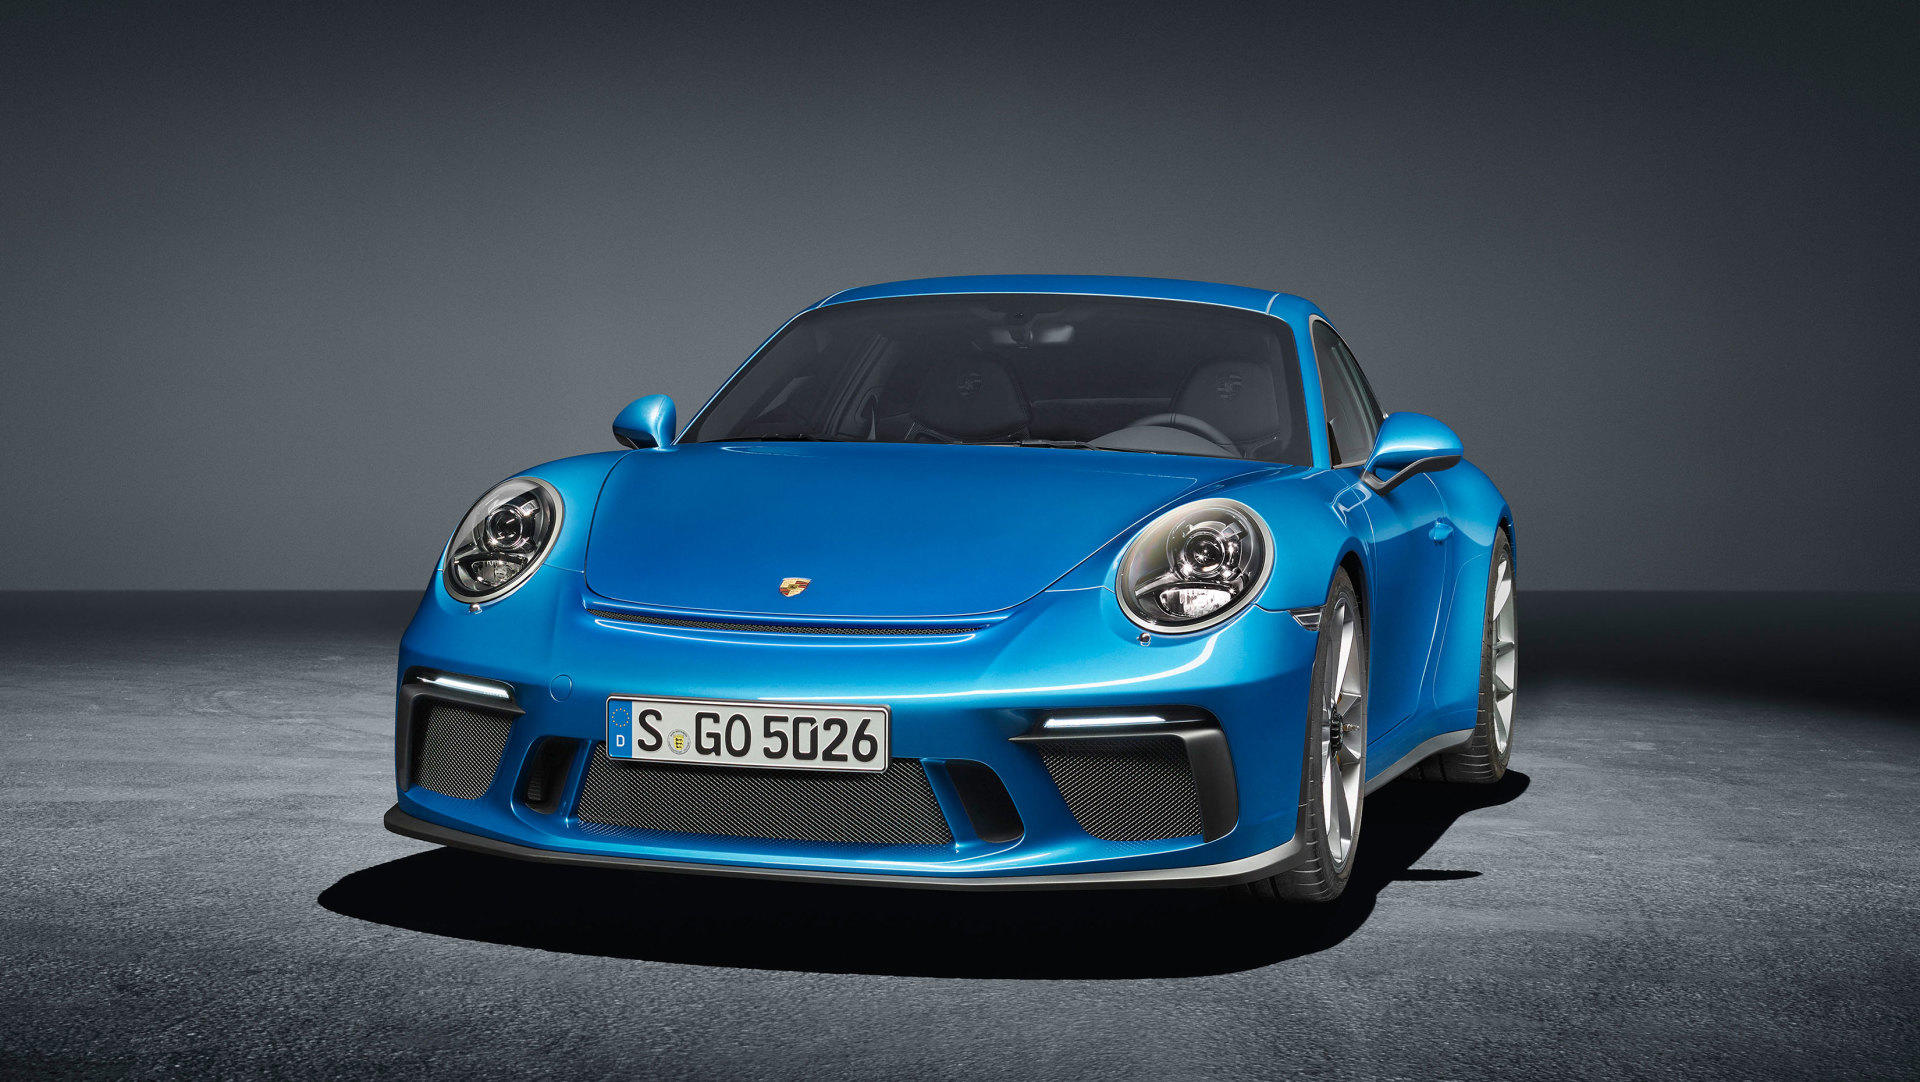 El Porsche 911 eléctrico continúa adelante, y traerá muchas sorpresas